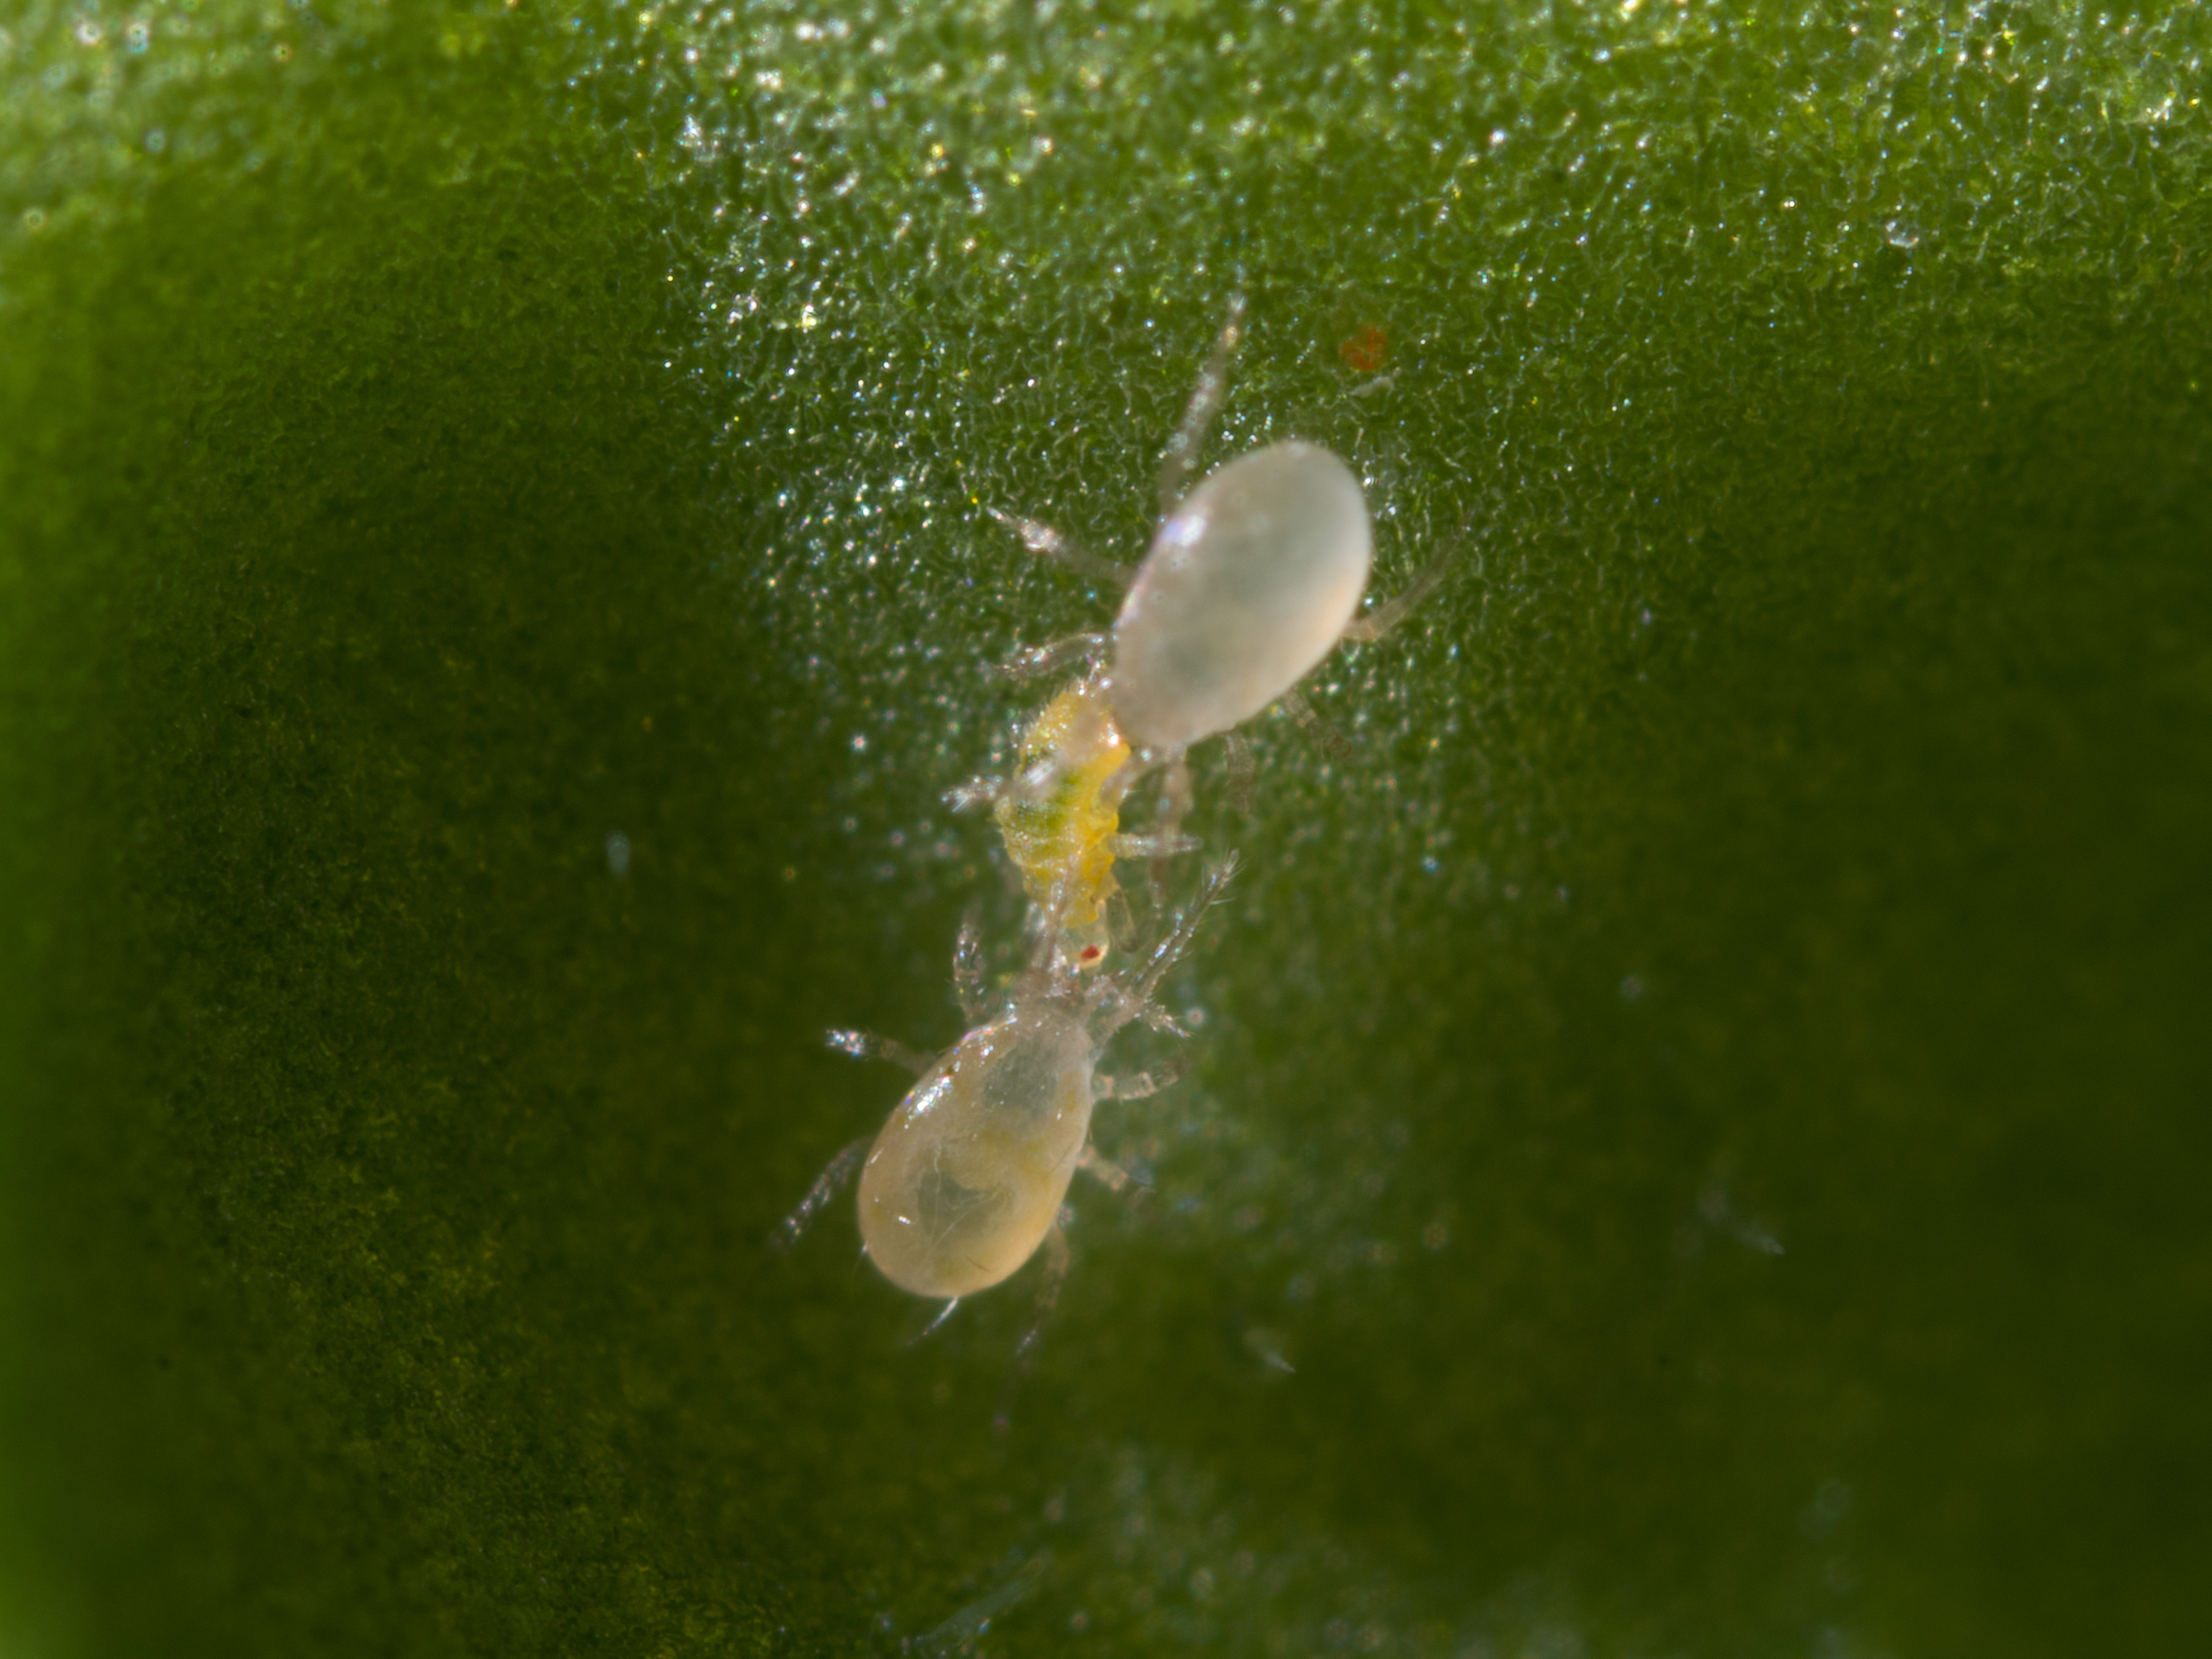 Swirskii eating thrips larvae